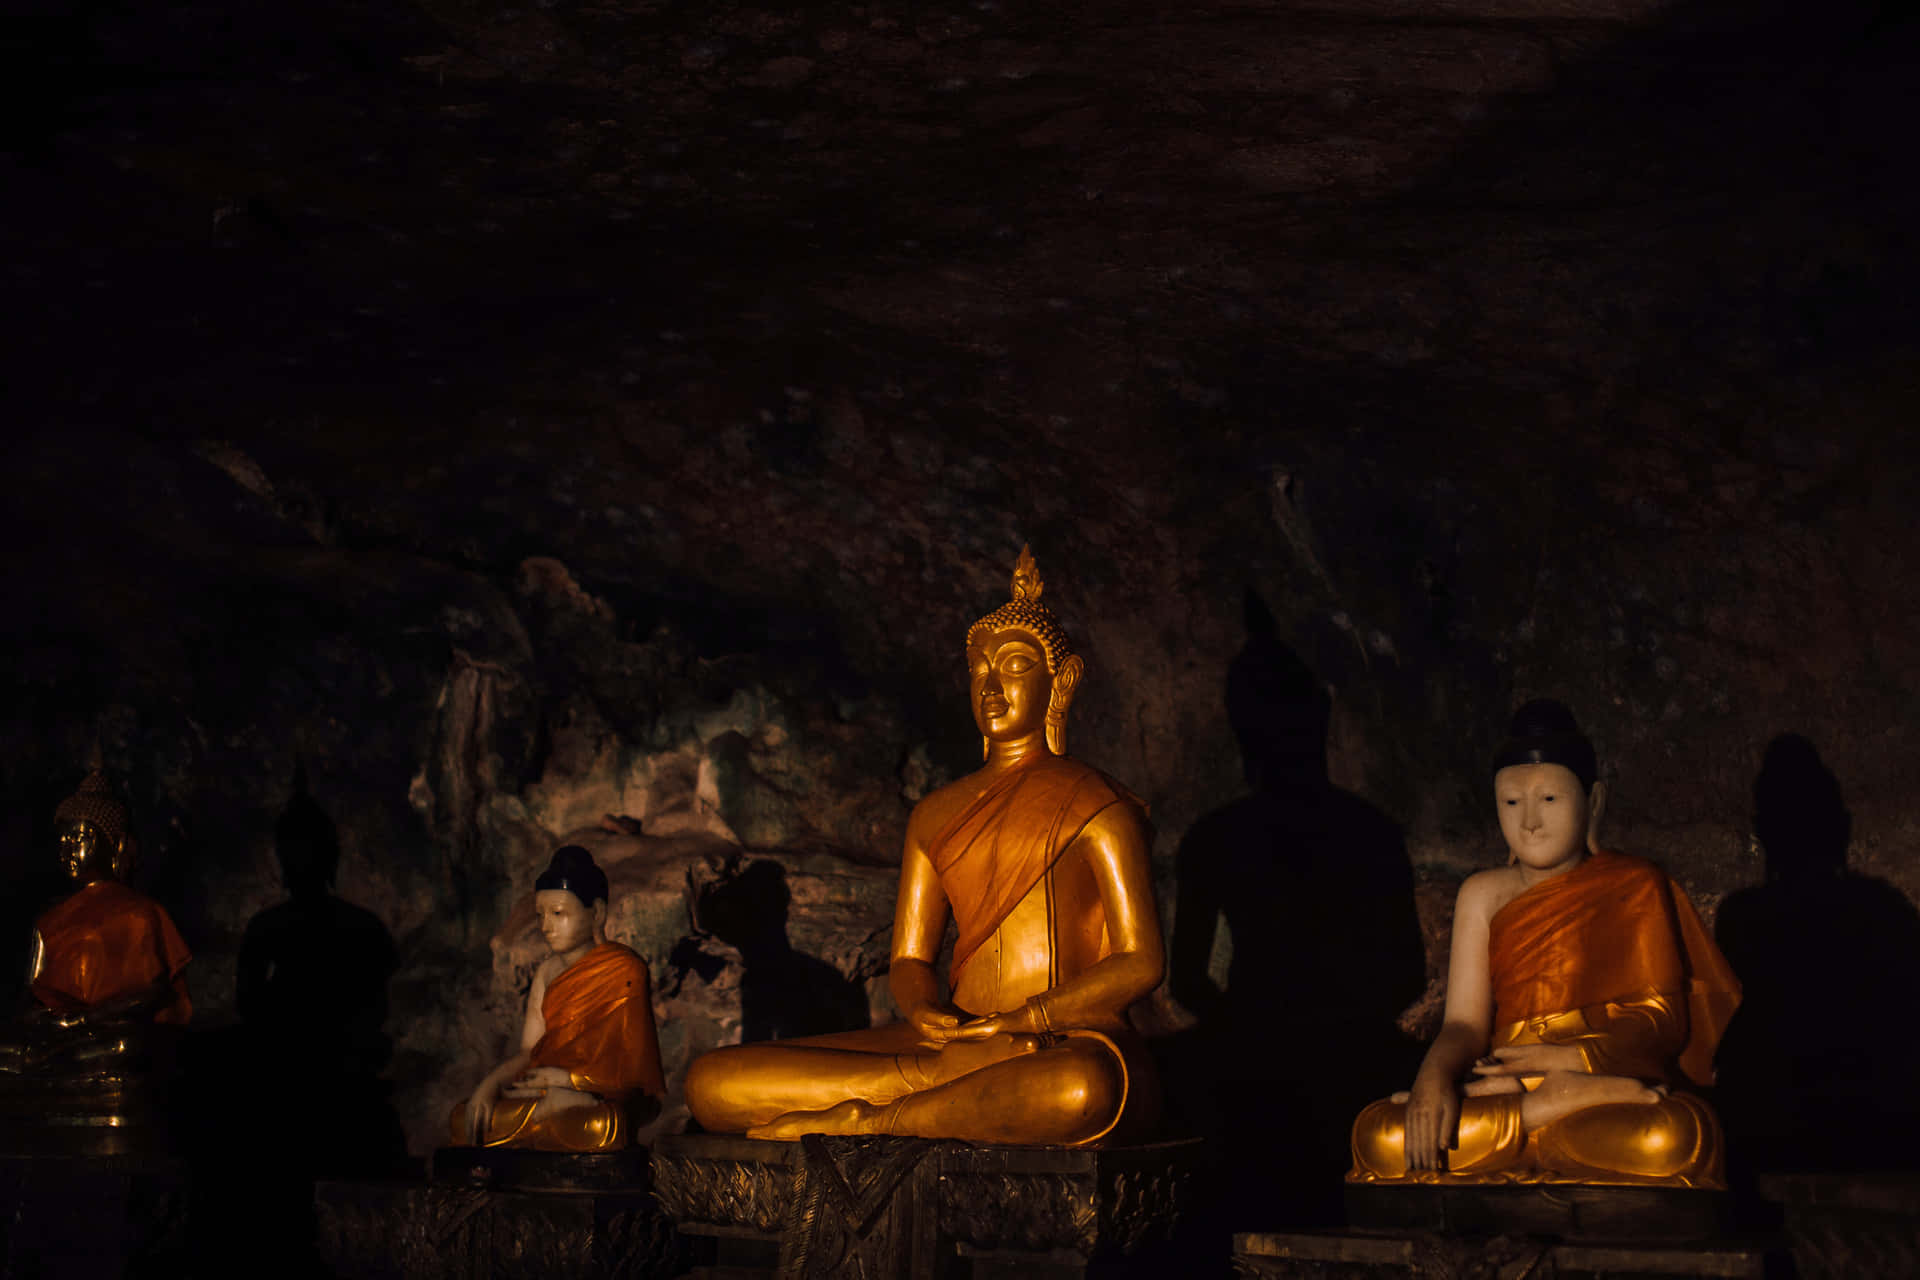 Buddhismusschwarzes Bild